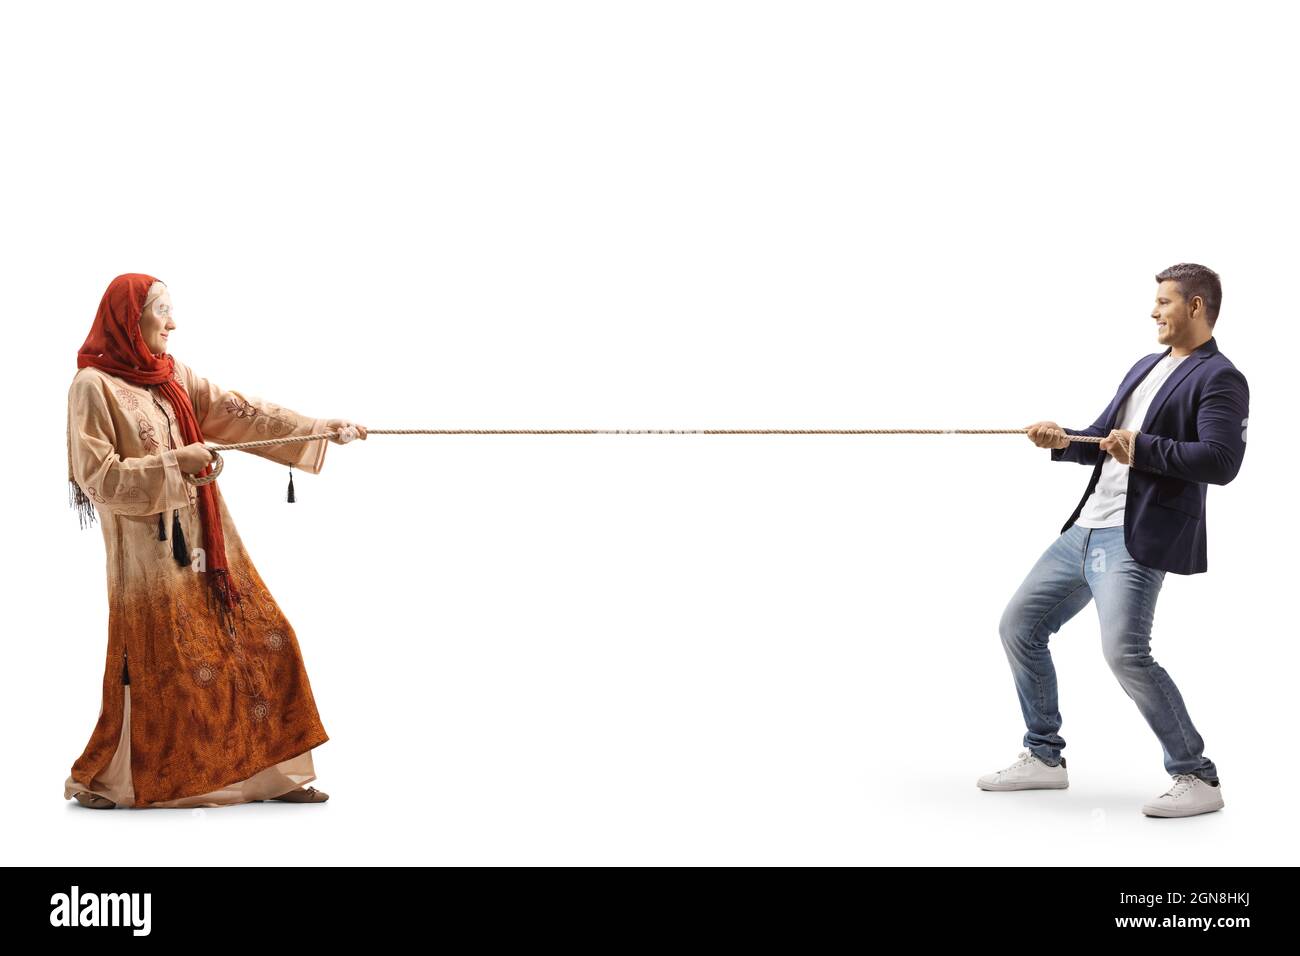 Photo pleine longueur d'un homme décontracté et d'une femme portant un hijab tirant une corde isolée sur fond blanc Banque D'Images